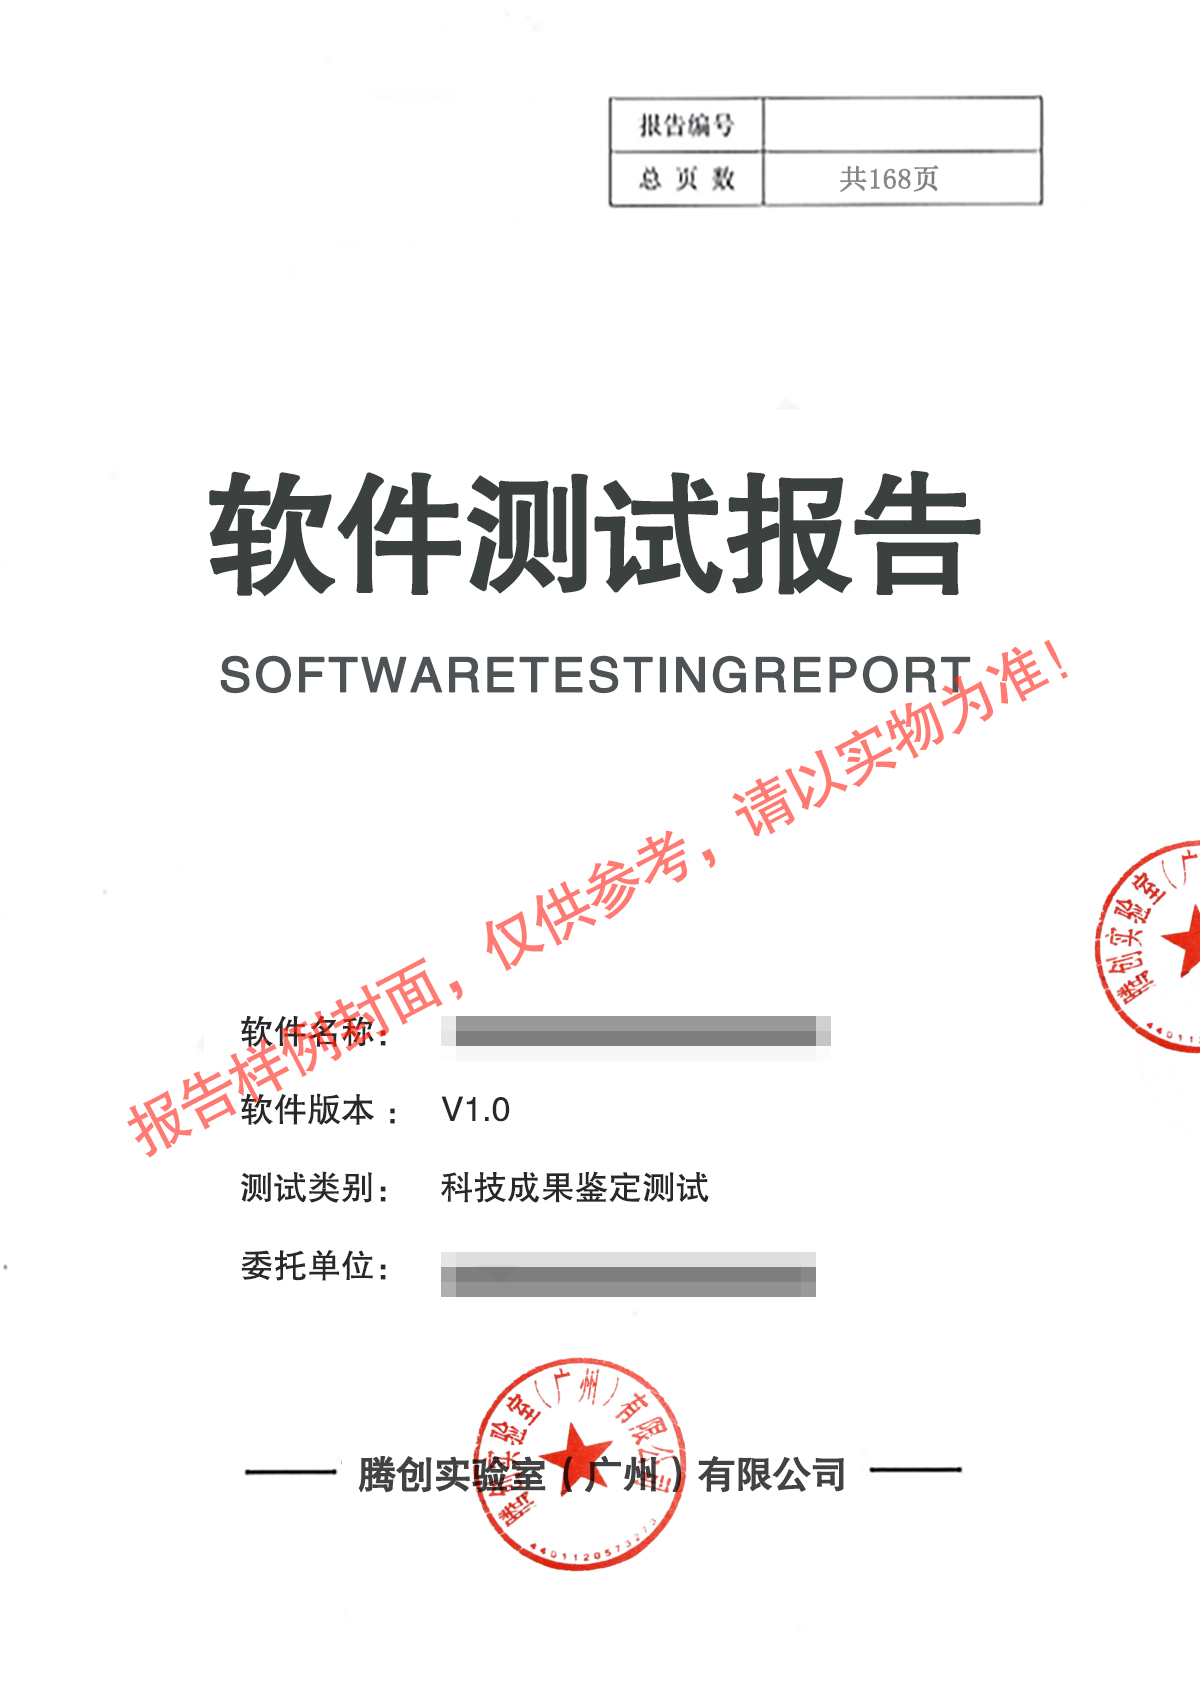 武汉系统软件鉴定机构 科技成果鉴定测试报告